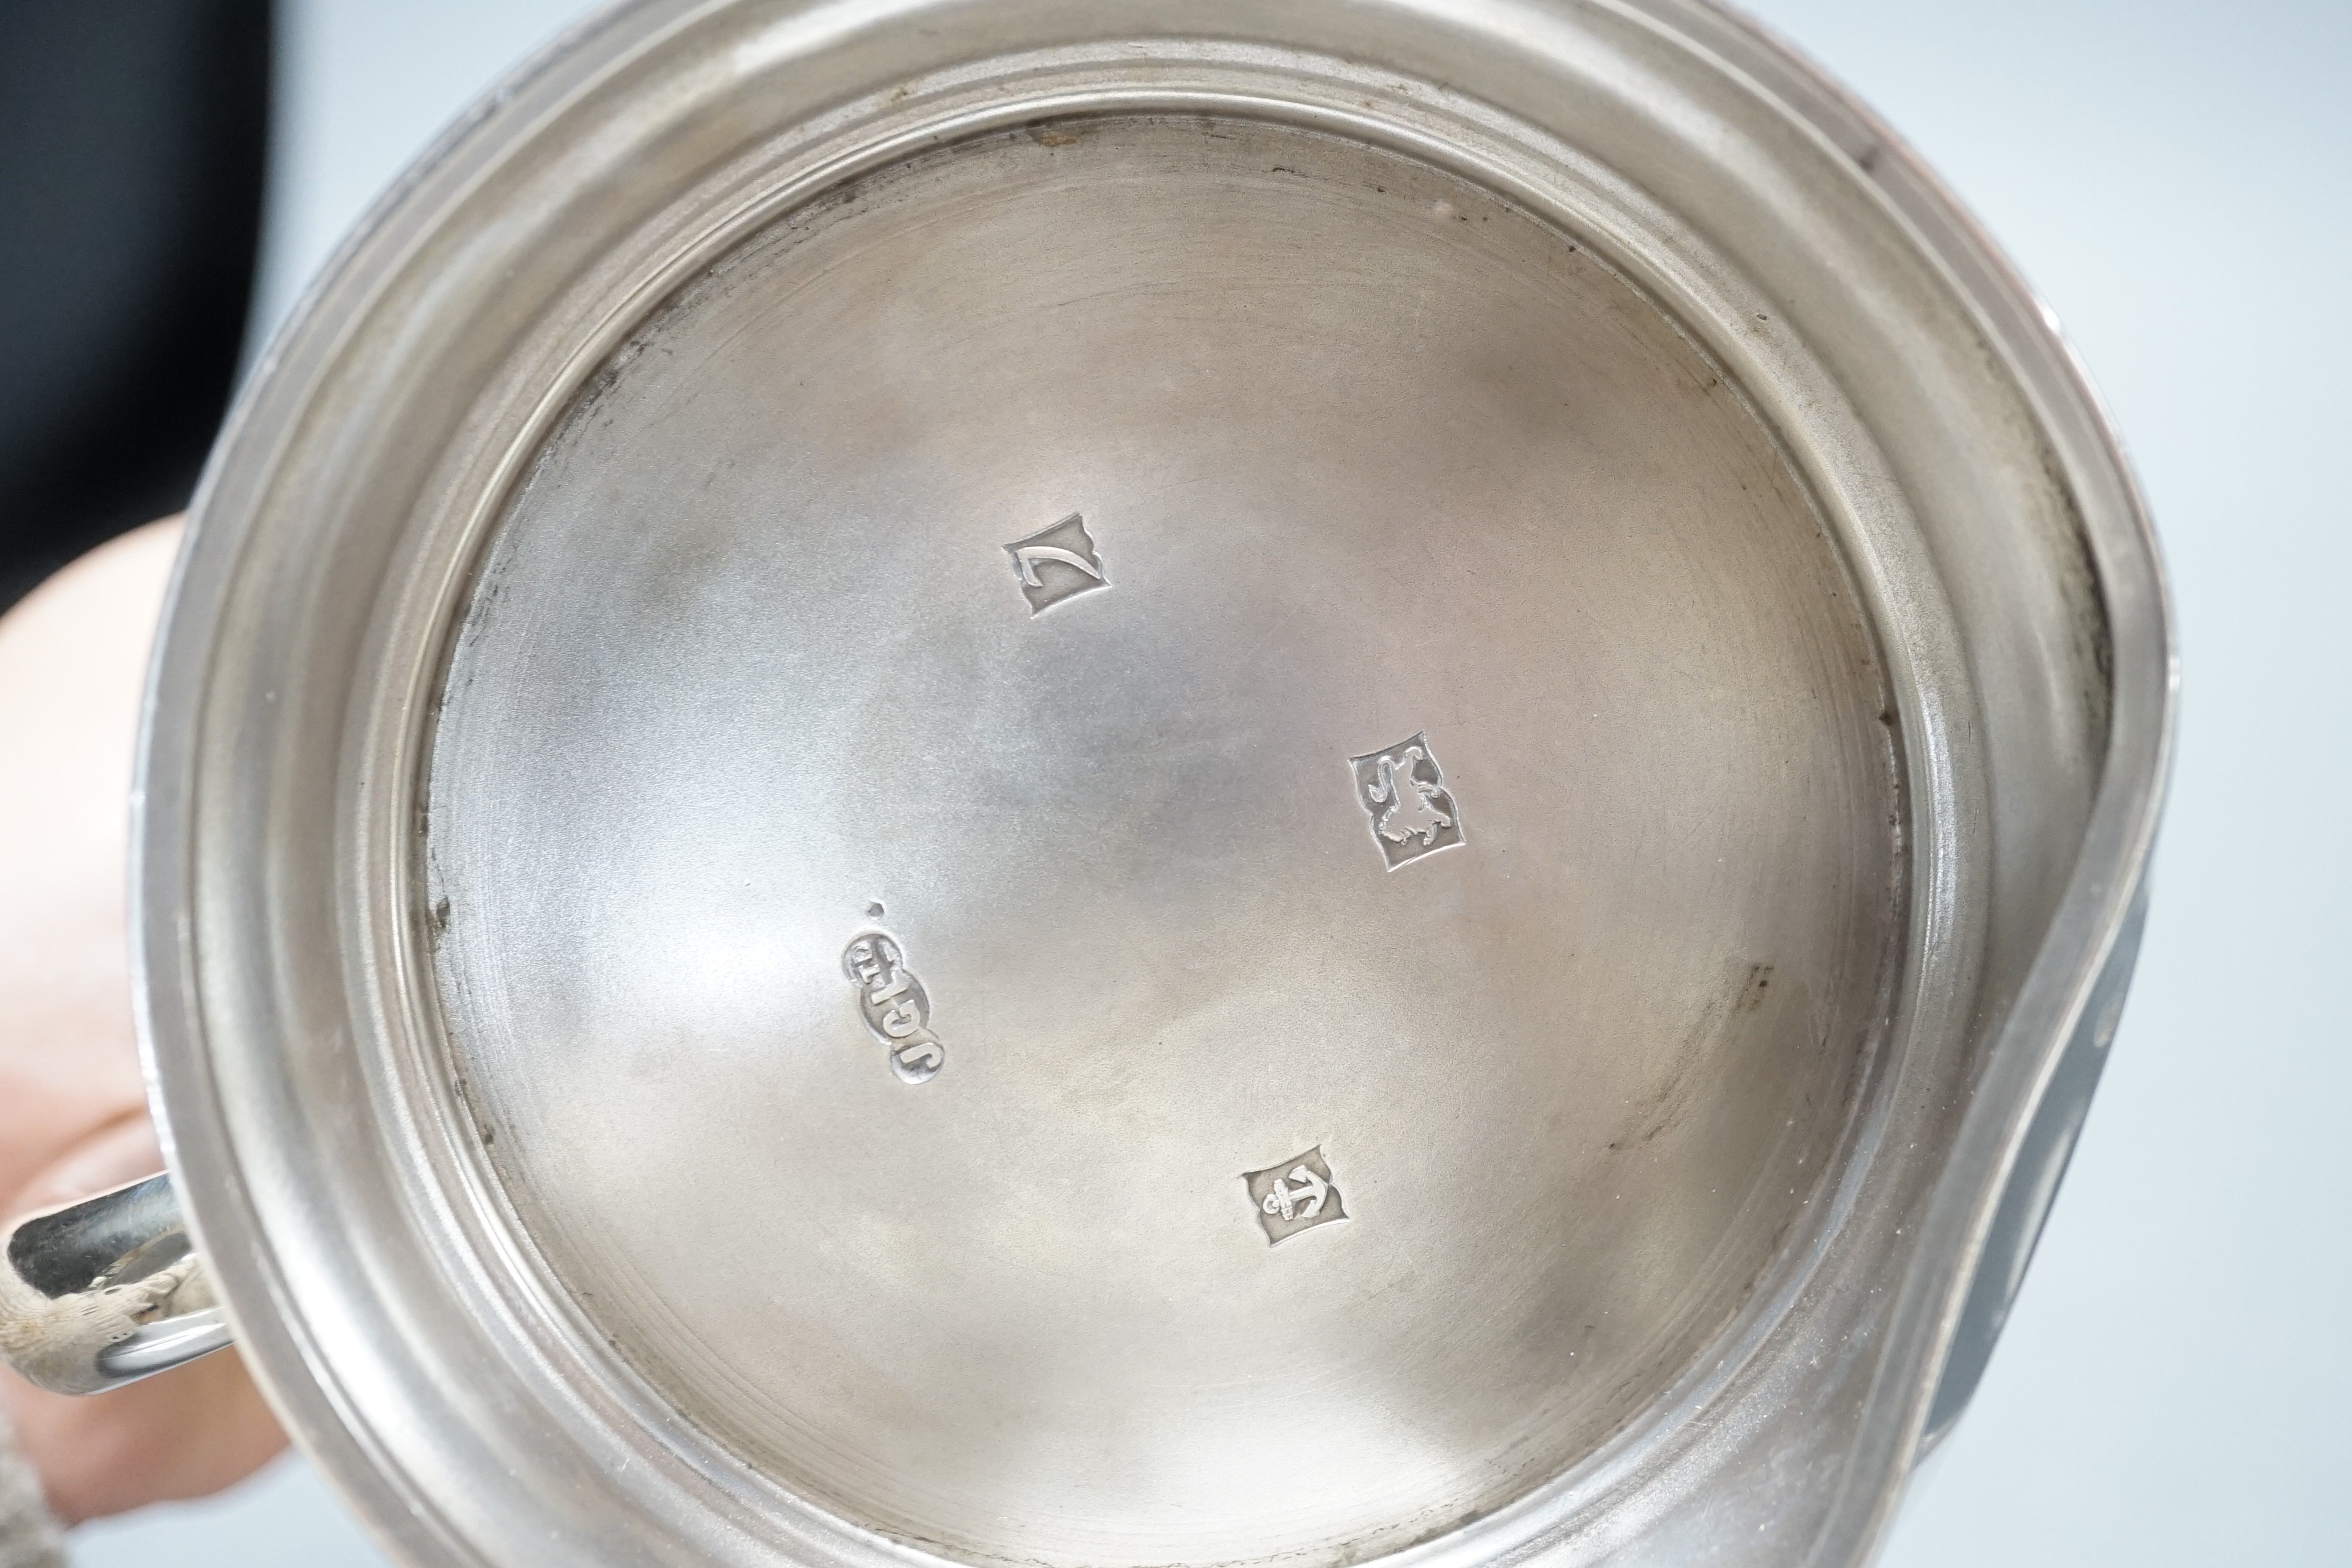 An Elizabeth II silver mug, Joseph Gloster Ltd, Birmingham, 1958, height 12.3cm, 10.7oz.